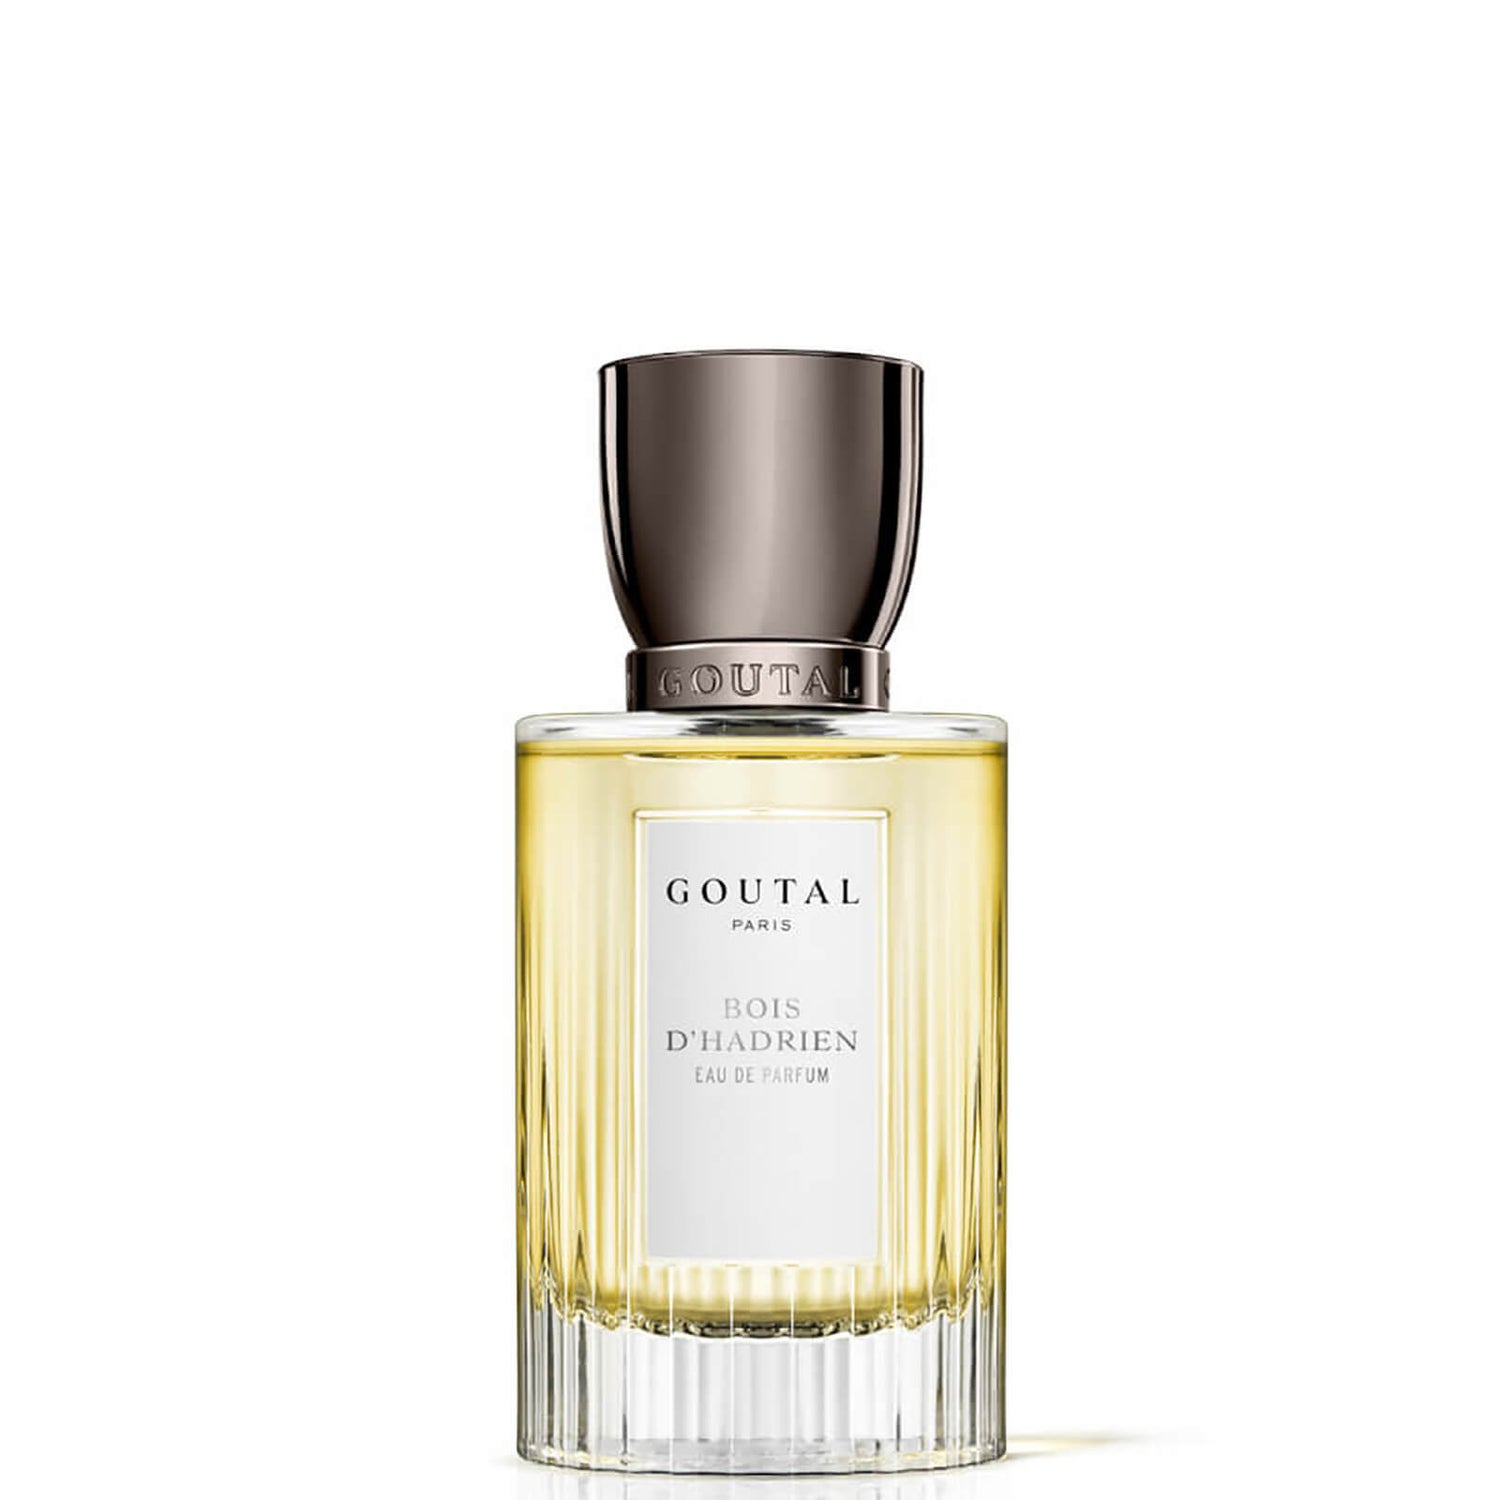 Goutal Bois d'Hadrien Mixed Eau de Parfum (Various Sizes)